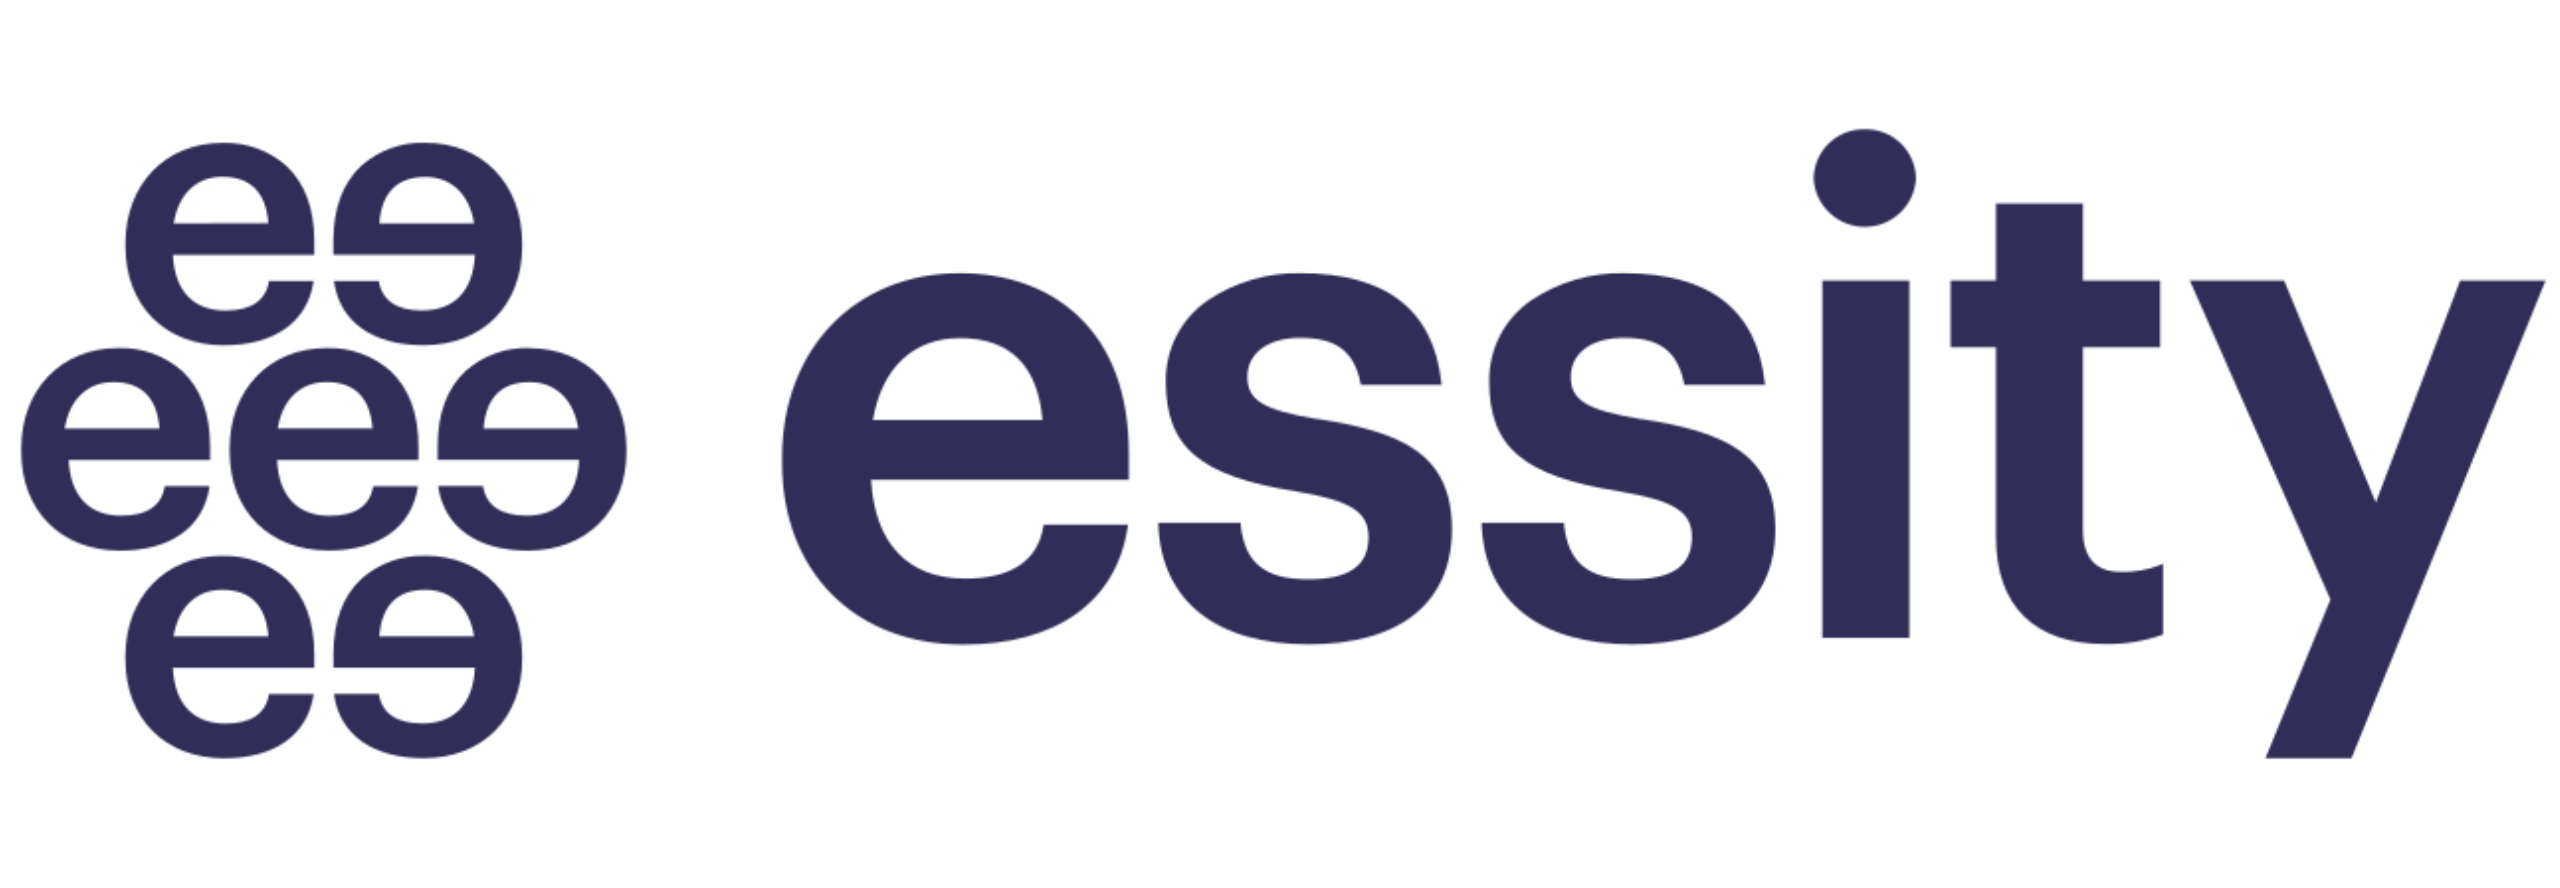 Essity logo - Tryane Analytics for internal communications